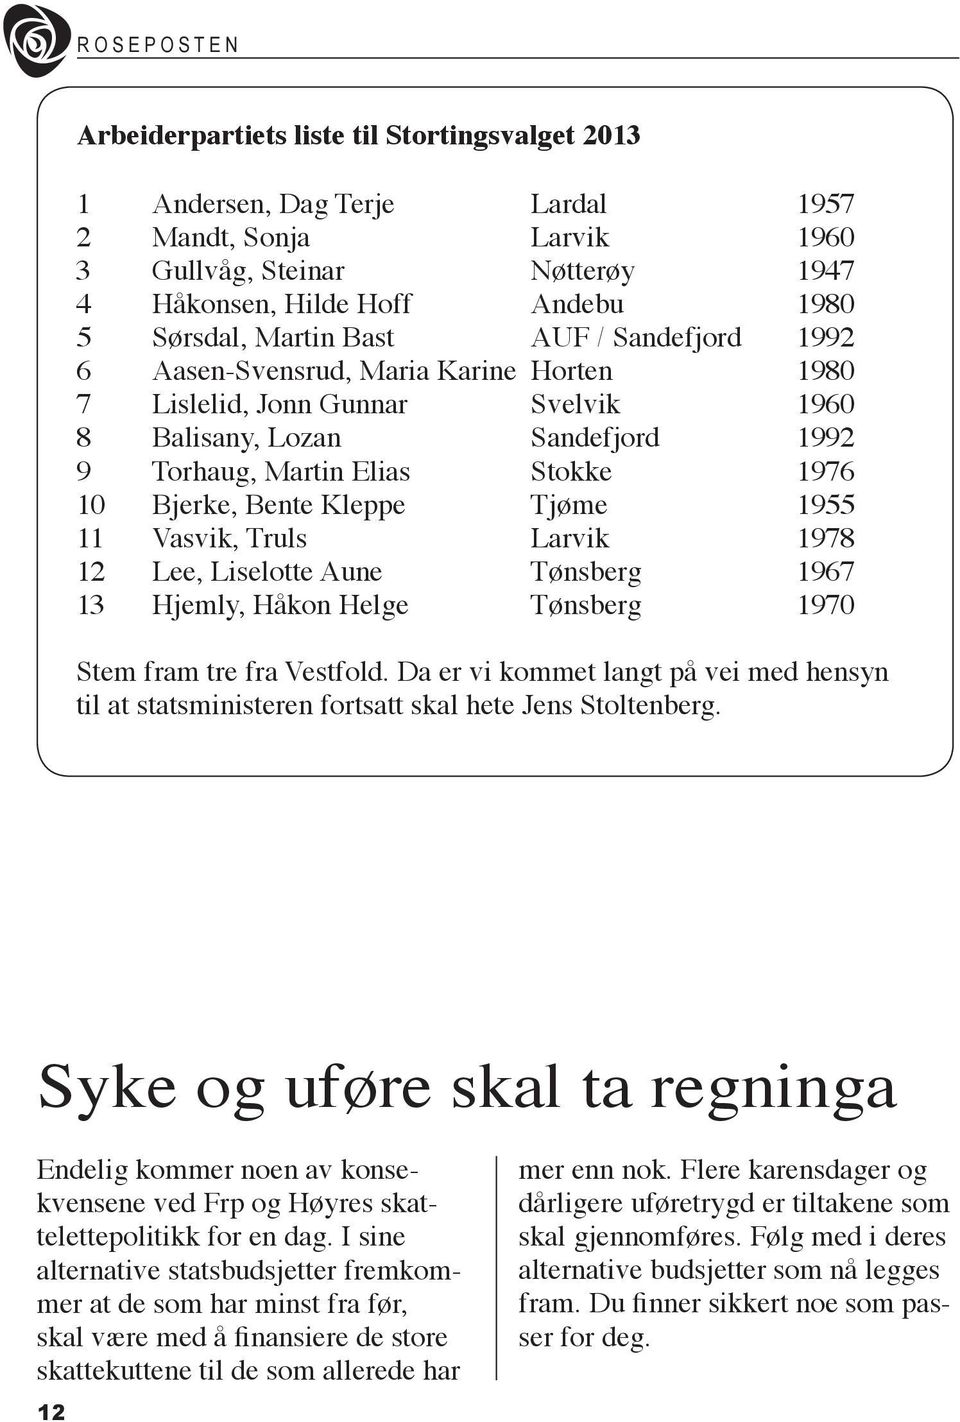 Tjøme 1955 11 Vasvik, Truls Larvik 1978 12 Lee, Liselotte Aune Tønsberg 1967 13 Hjemly, Håkon Helge Tønsberg 1970 Stem fram tre fra Vestfold.